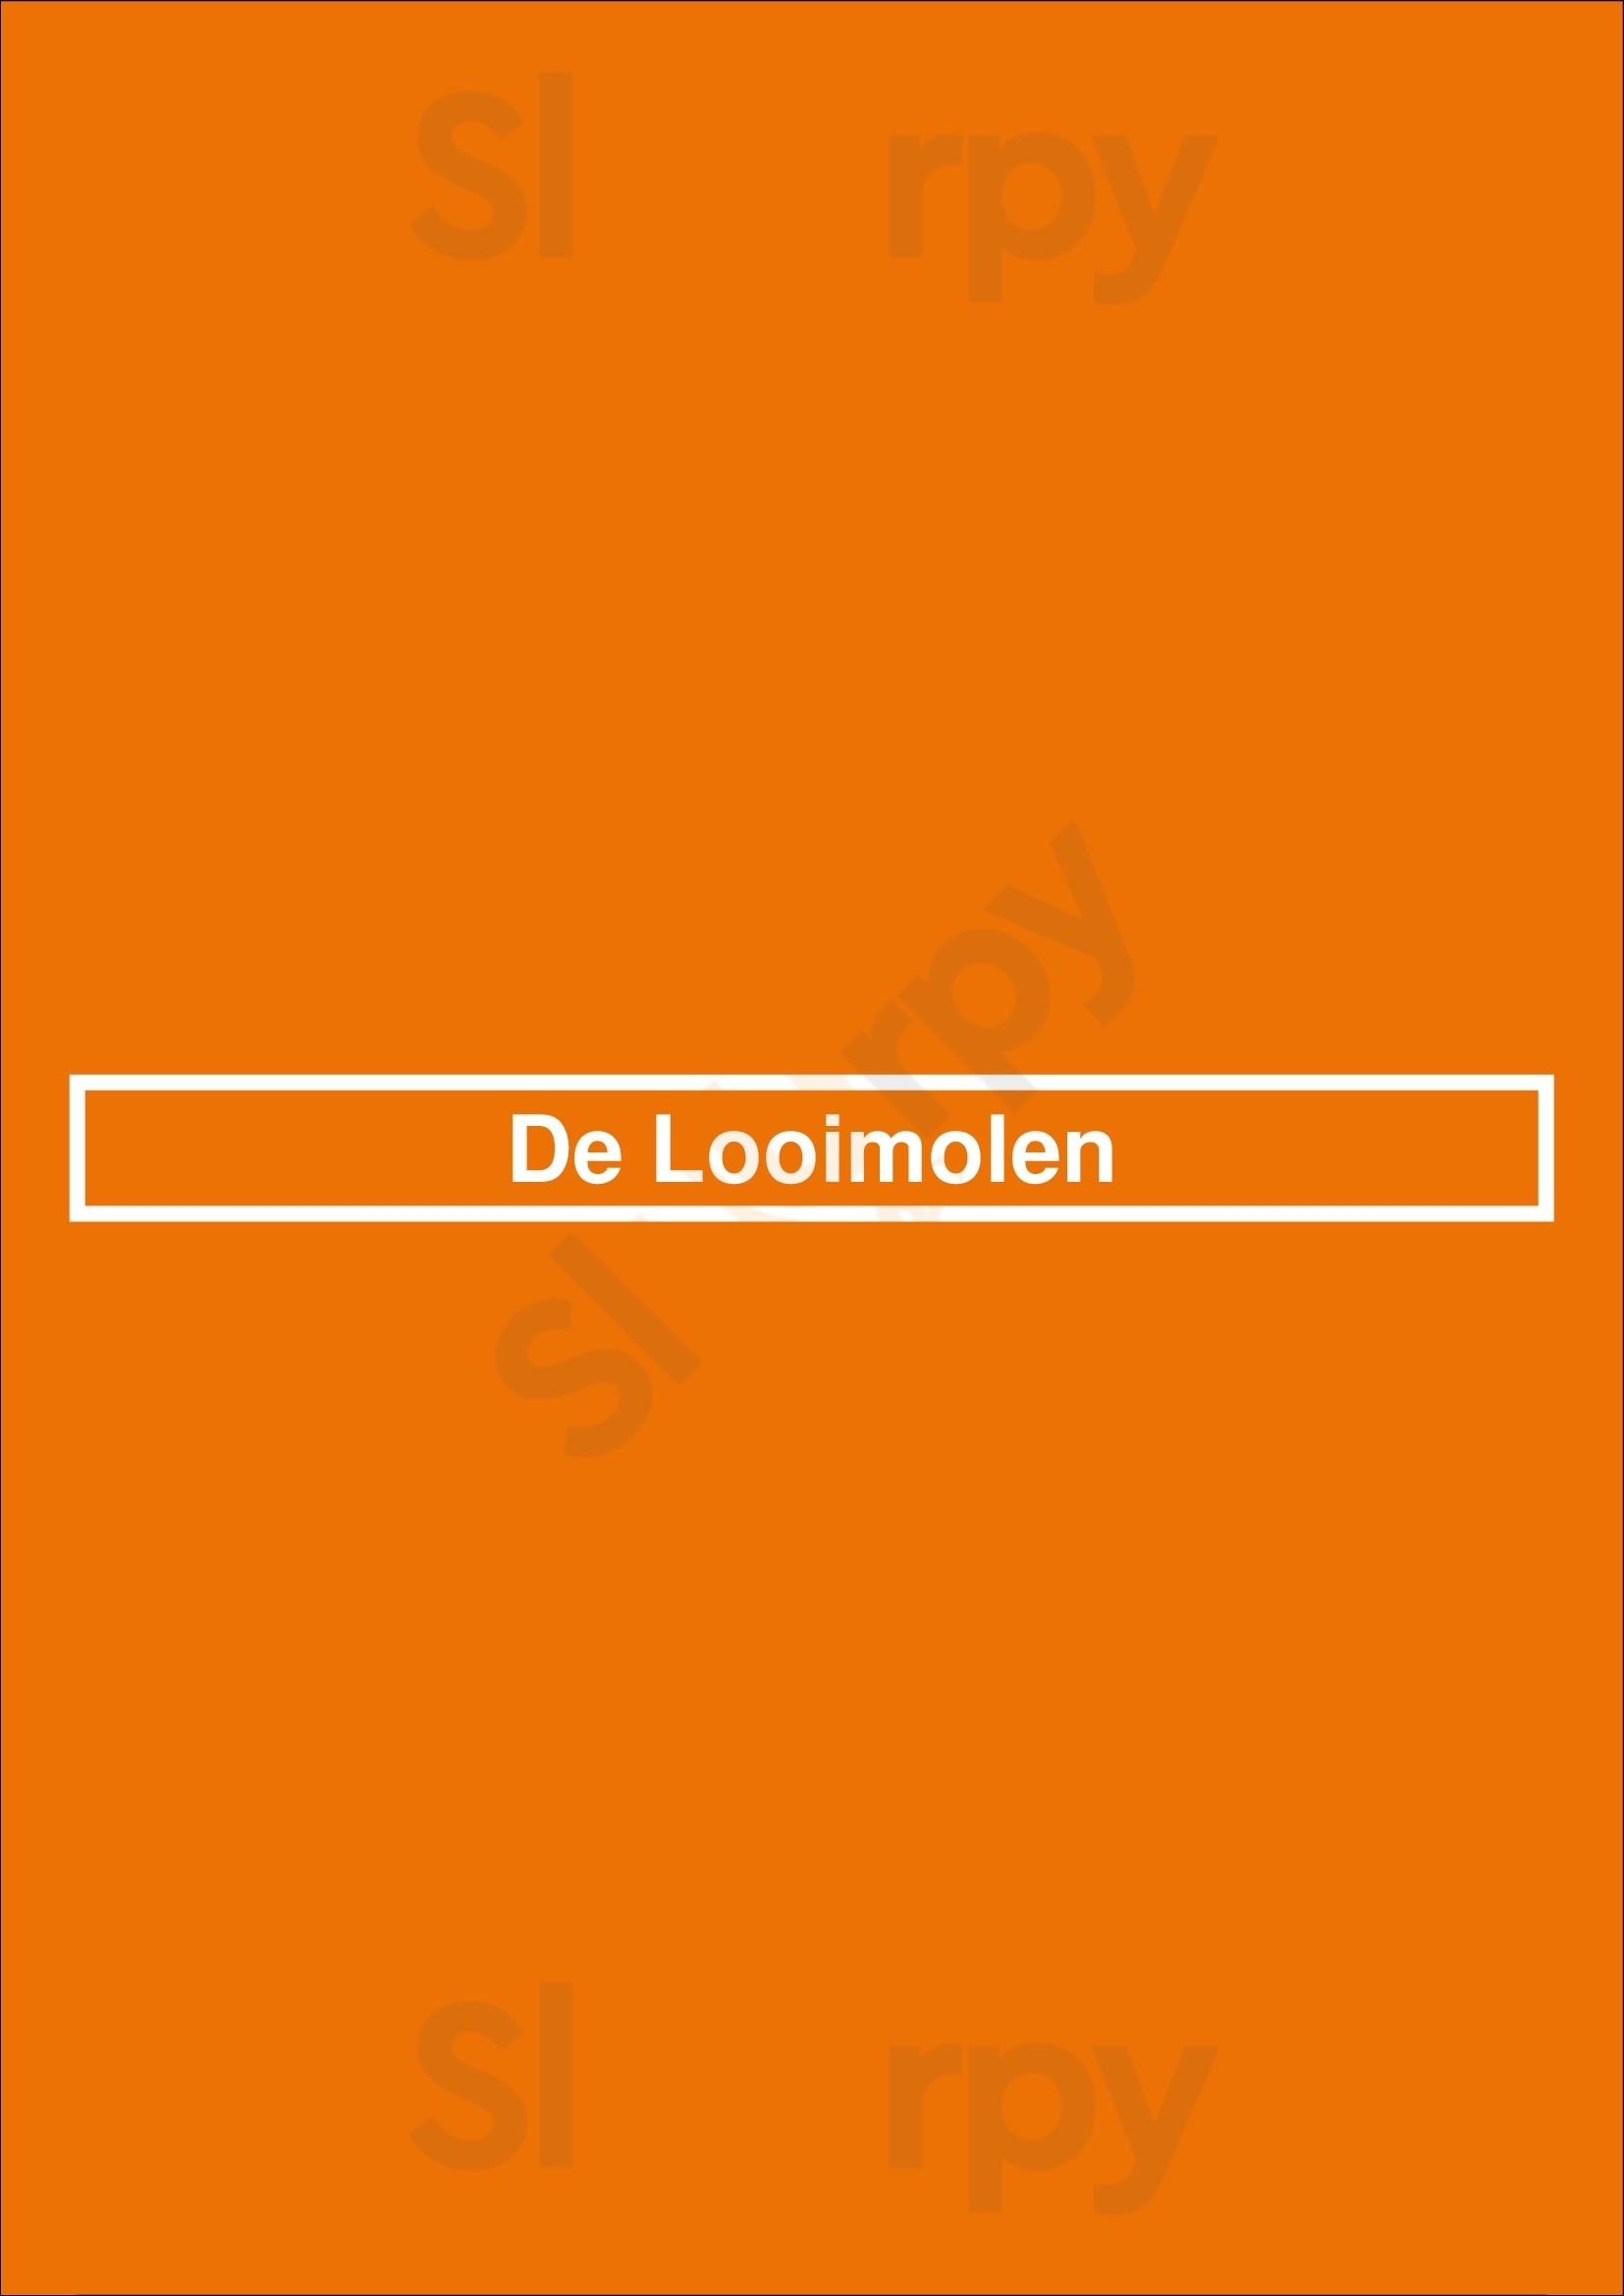 De Looimolen Nijmegen Menu - 1